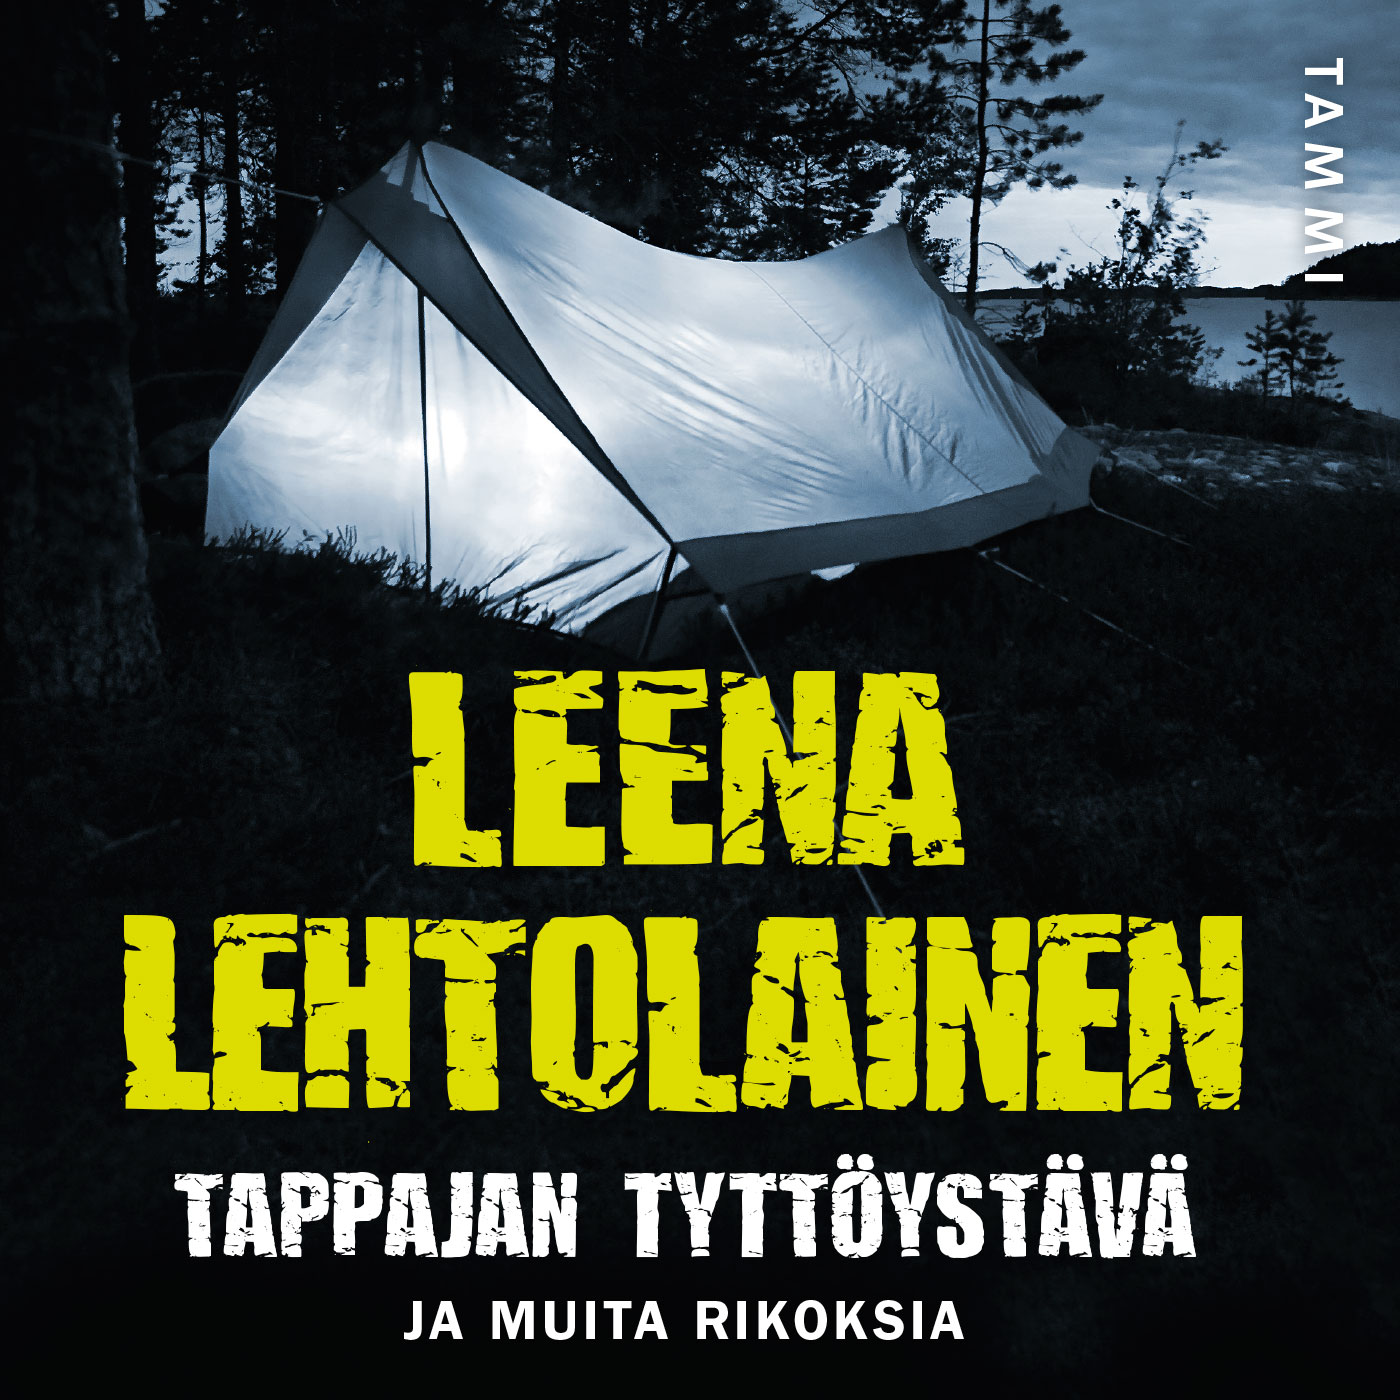 Lehtolainen, Leena - Tappajan tyttöystävä: ja muita rikoksia, äänikirja